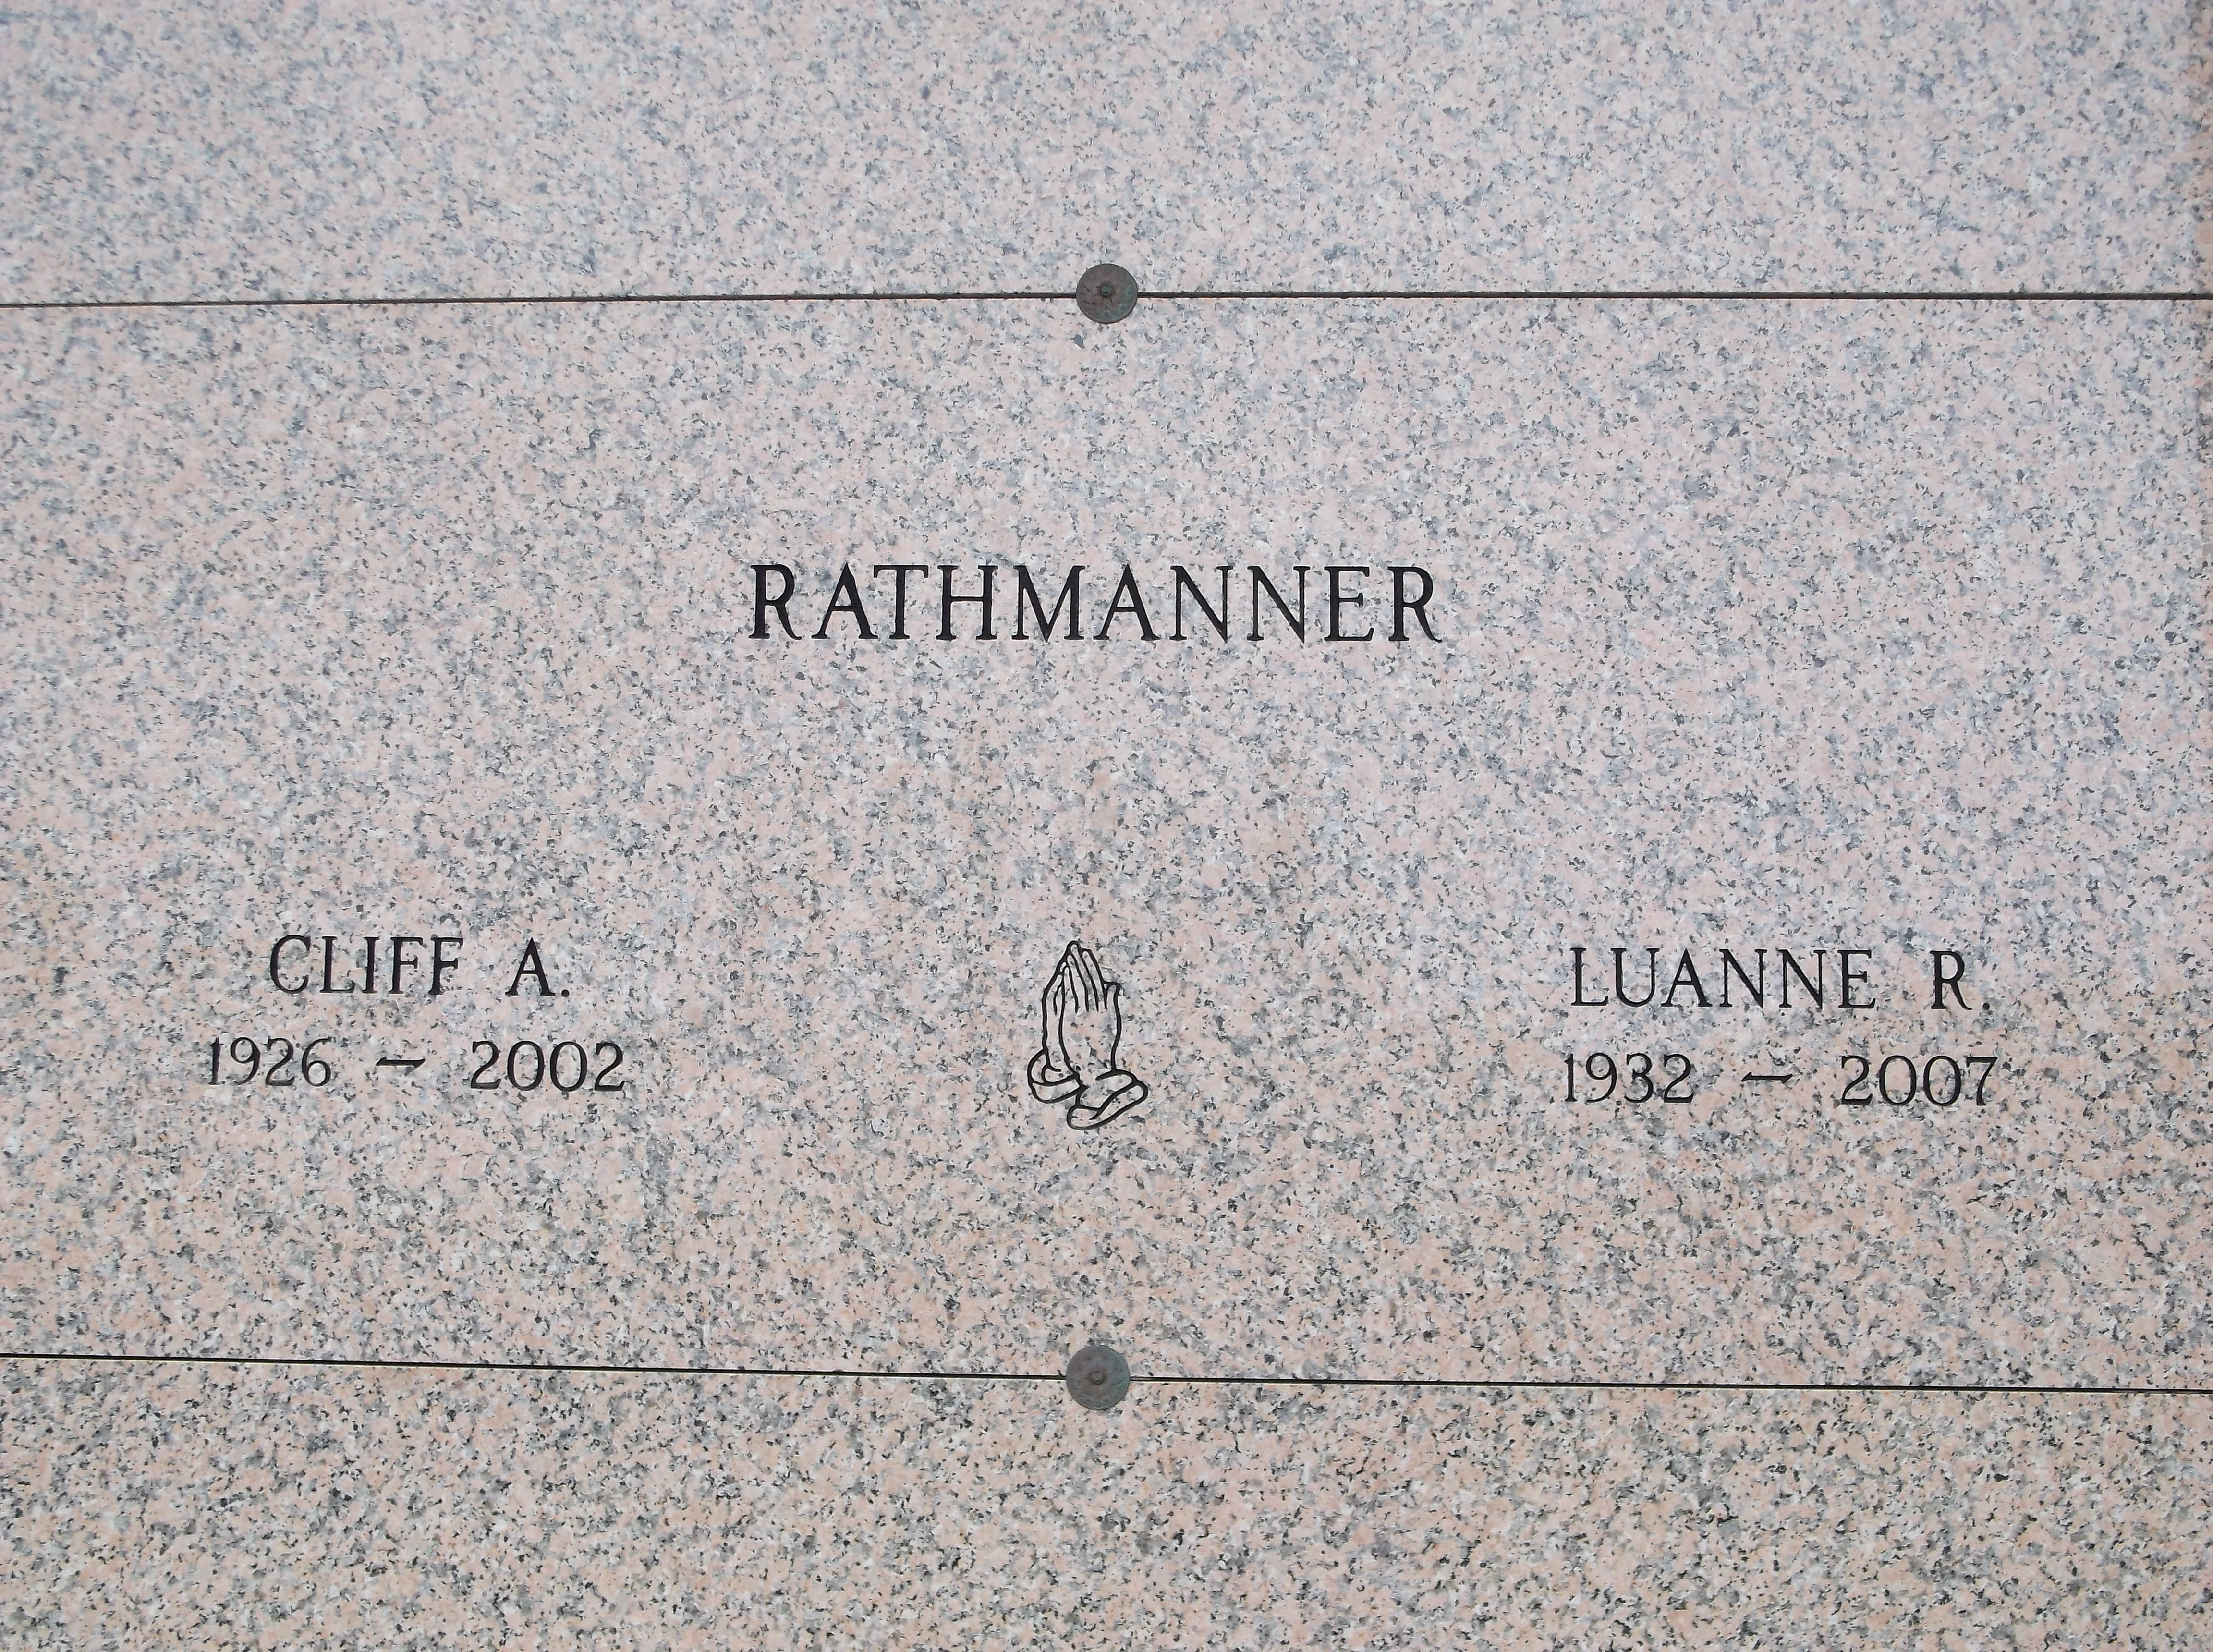 Cliff A Rathmanner